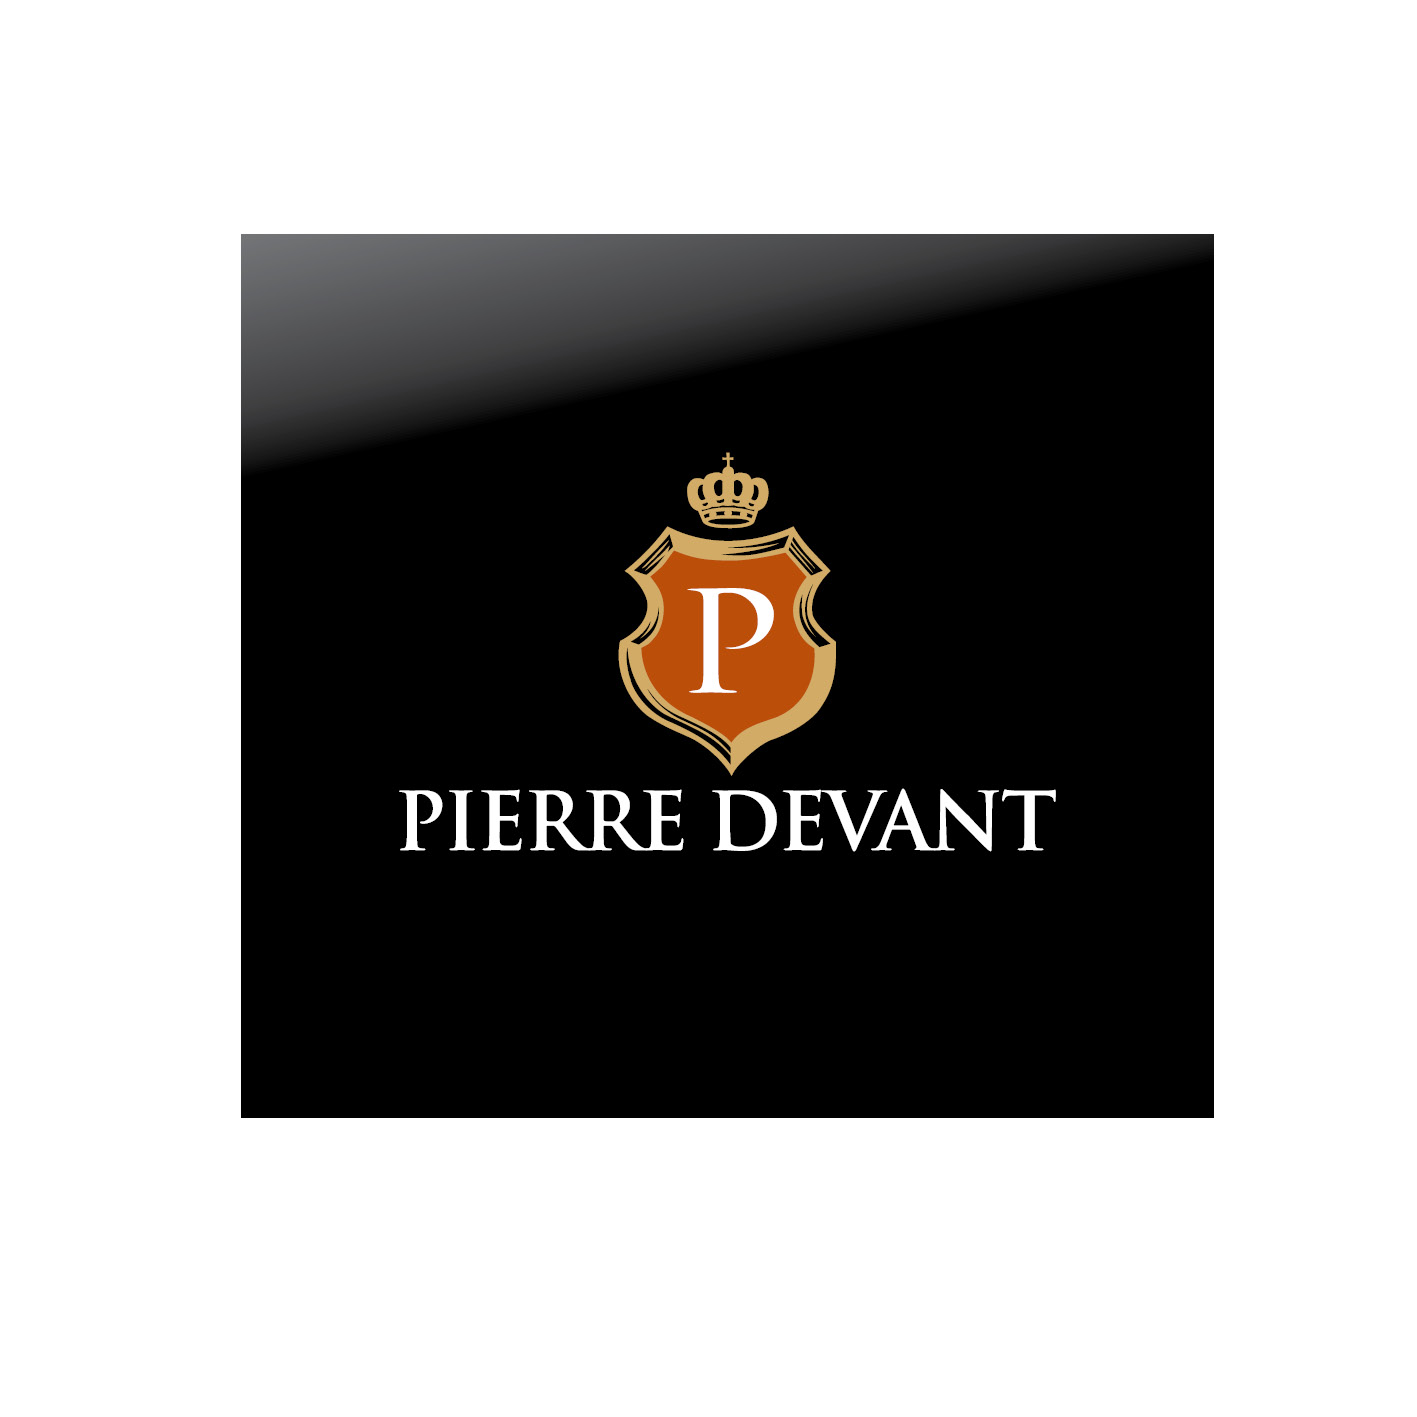 Pierre Devant